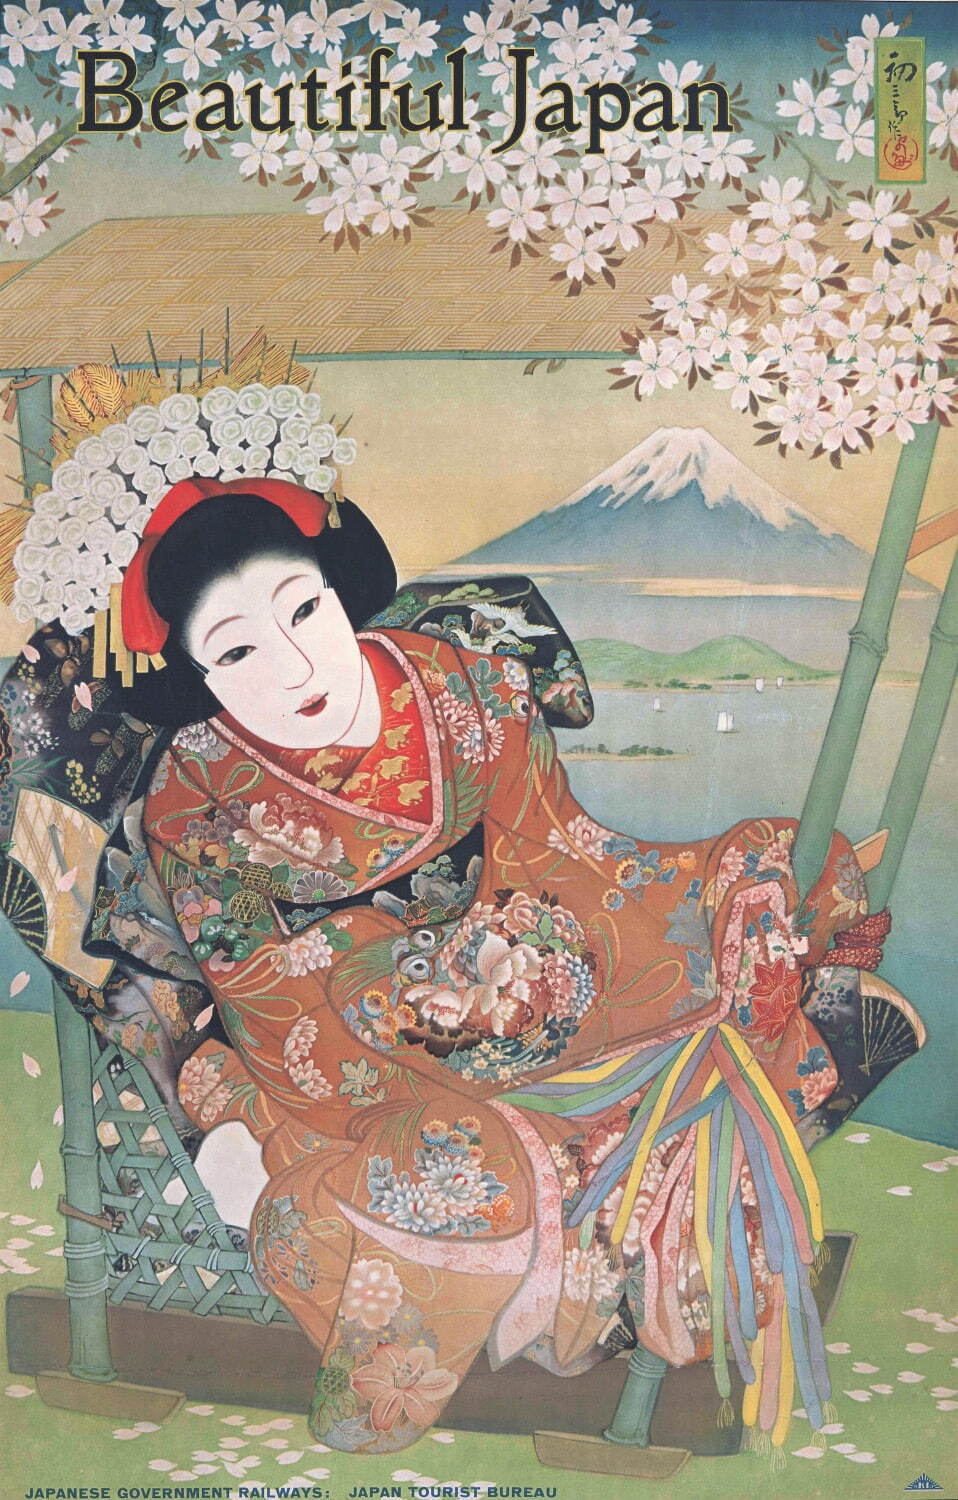 吉田初三郎 ポスター《Beautiful Japan (駕籠に乗れる美人)》
昭和5年(1930年) 江戸東京博物館蔵